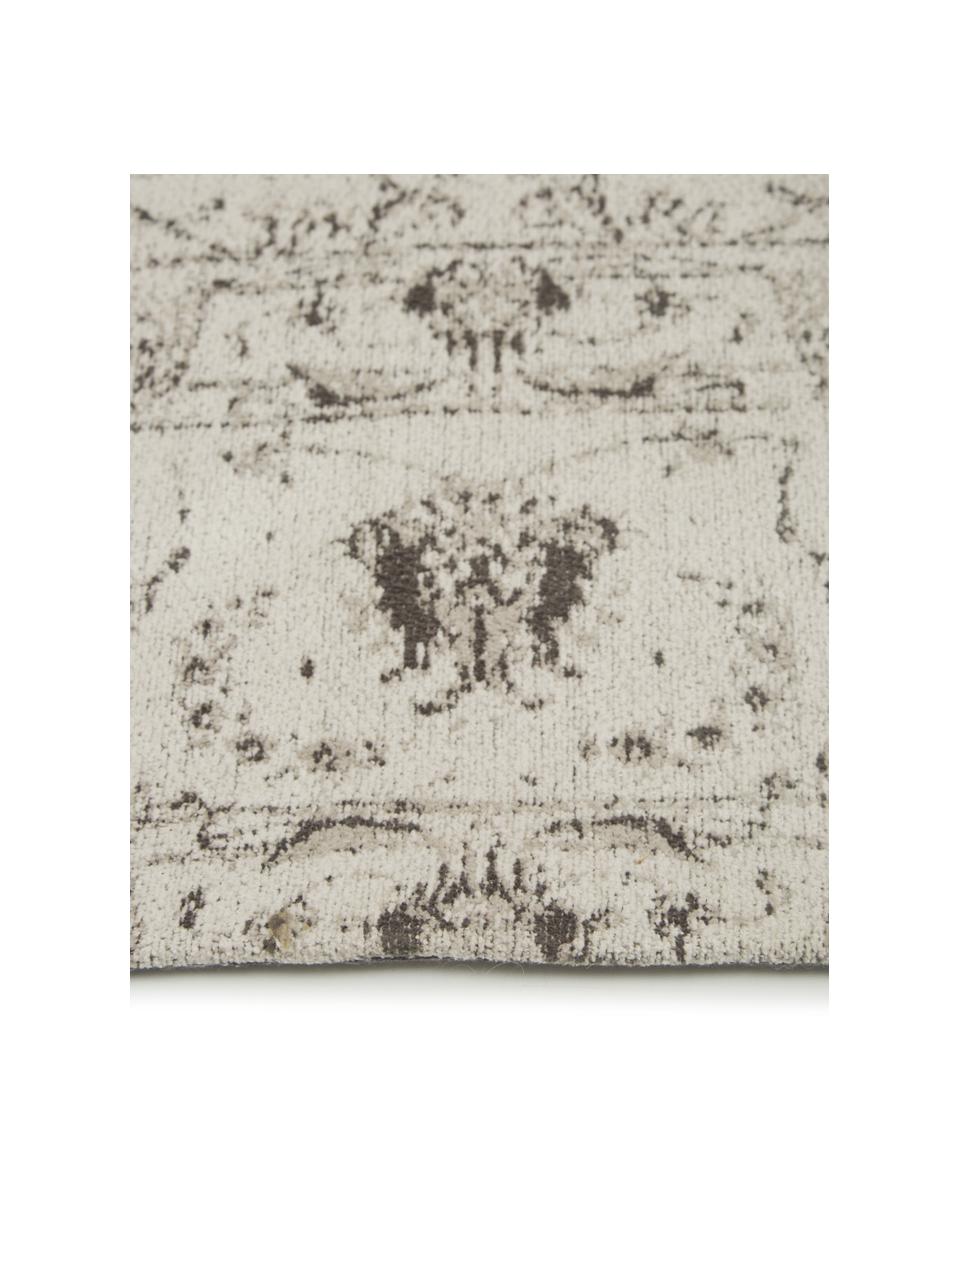 Tappeto vintage in ciniglia color beige-grigio tessuto a mano Sofia, Retro: 100% cotone, Beige, grigio, Larg.160 x Lung. 230 cm (taglia M)